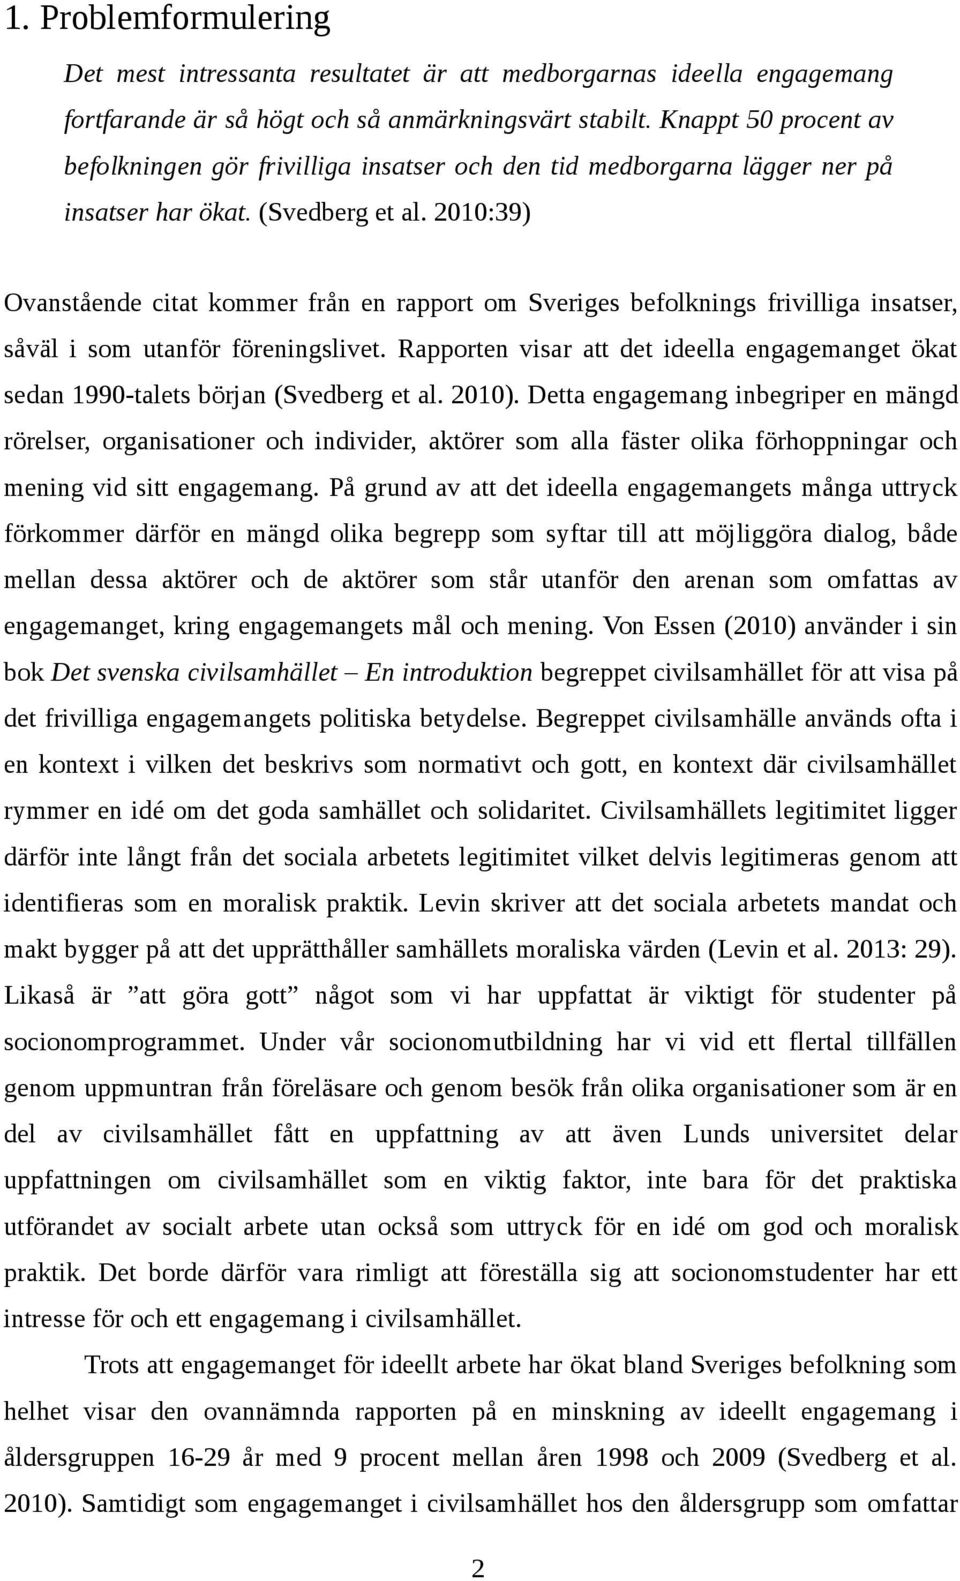 2010:39) Ovanstående citat kommer från en rapport om Sveriges befolknings frivilliga insatser, såväl i som utanför föreningslivet.